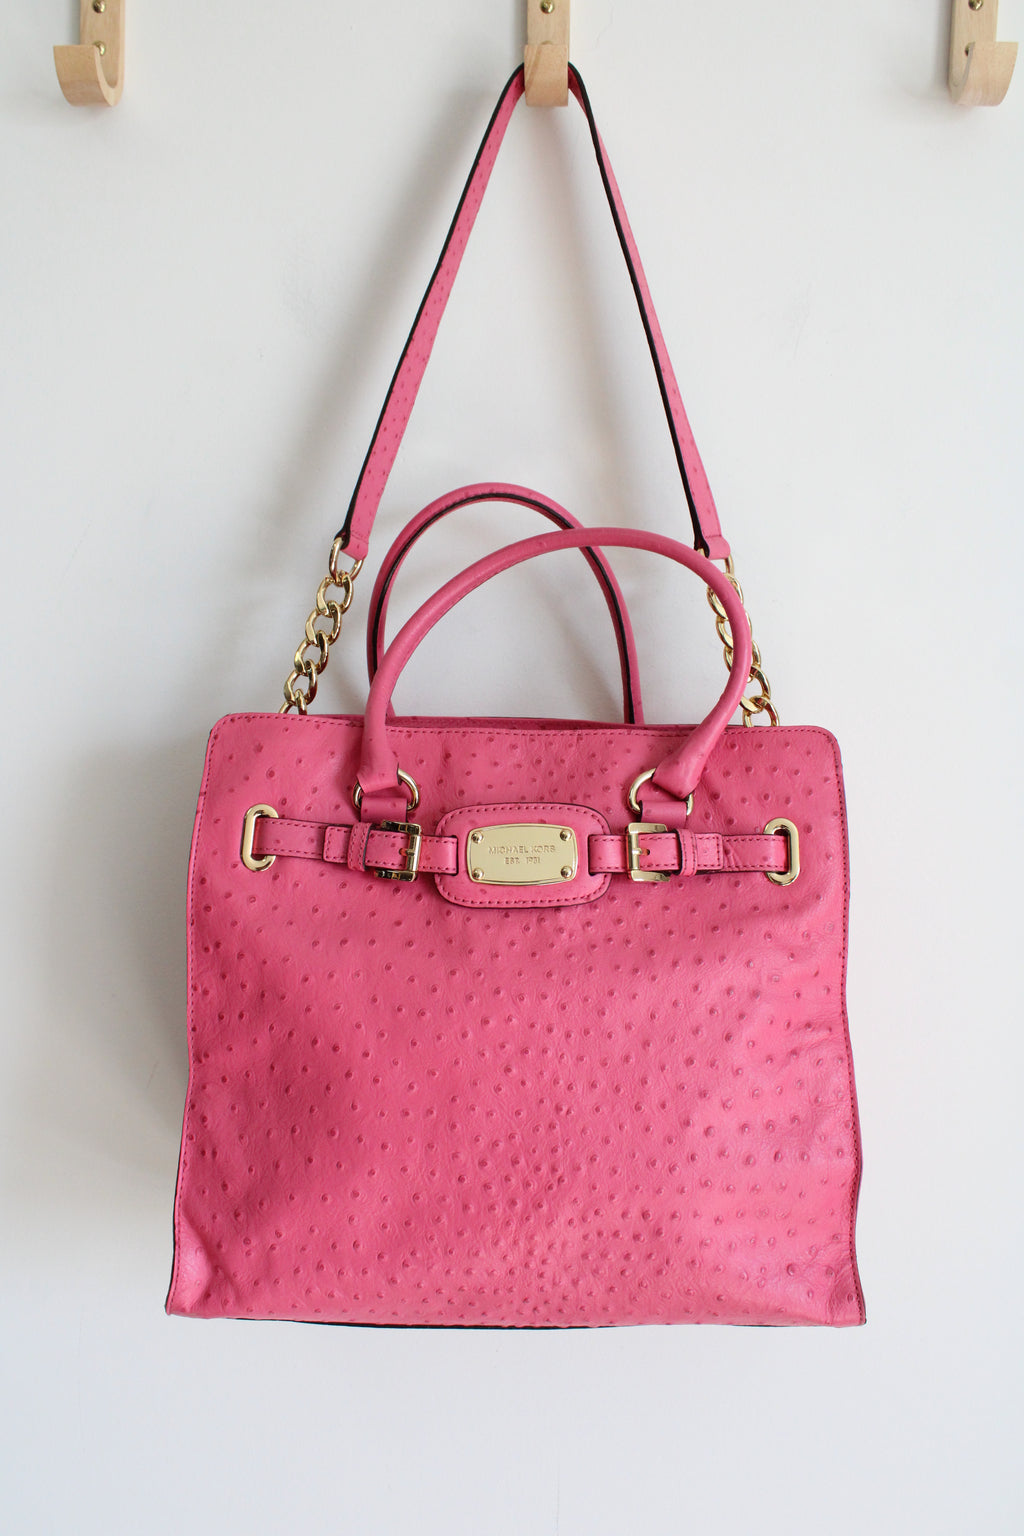 Michael Kors Pink Large Ostrich Leather Shoulder Bag